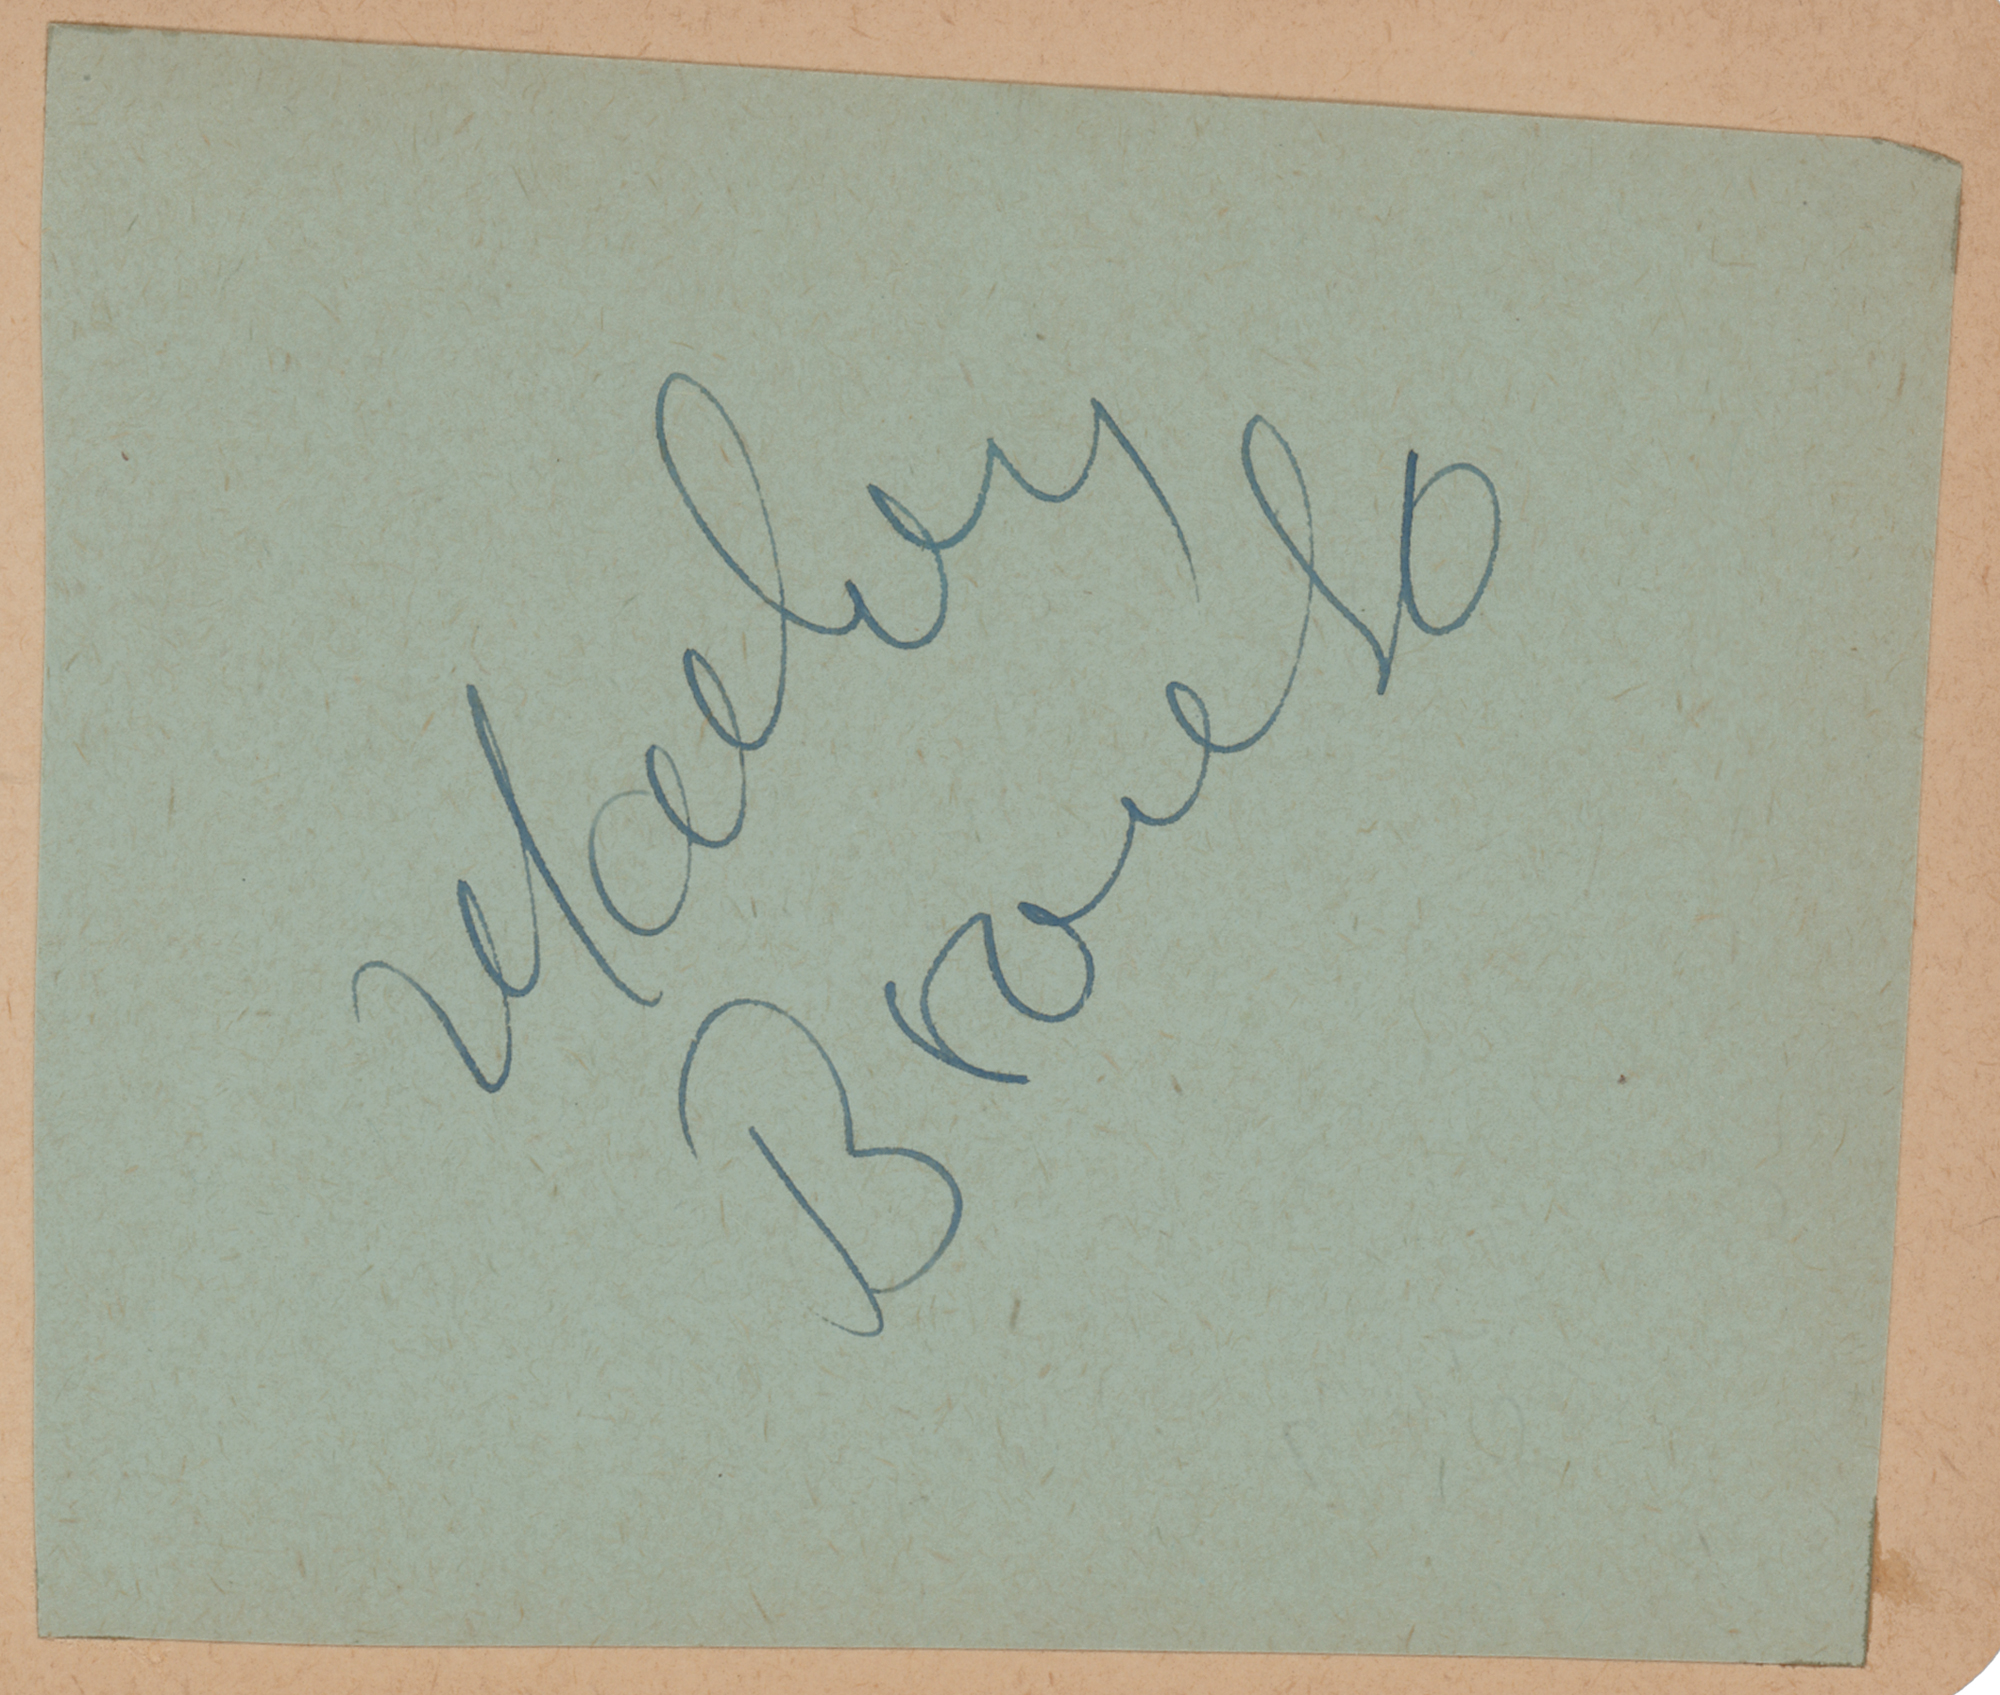 Lot #760 Marlon Brando Signature